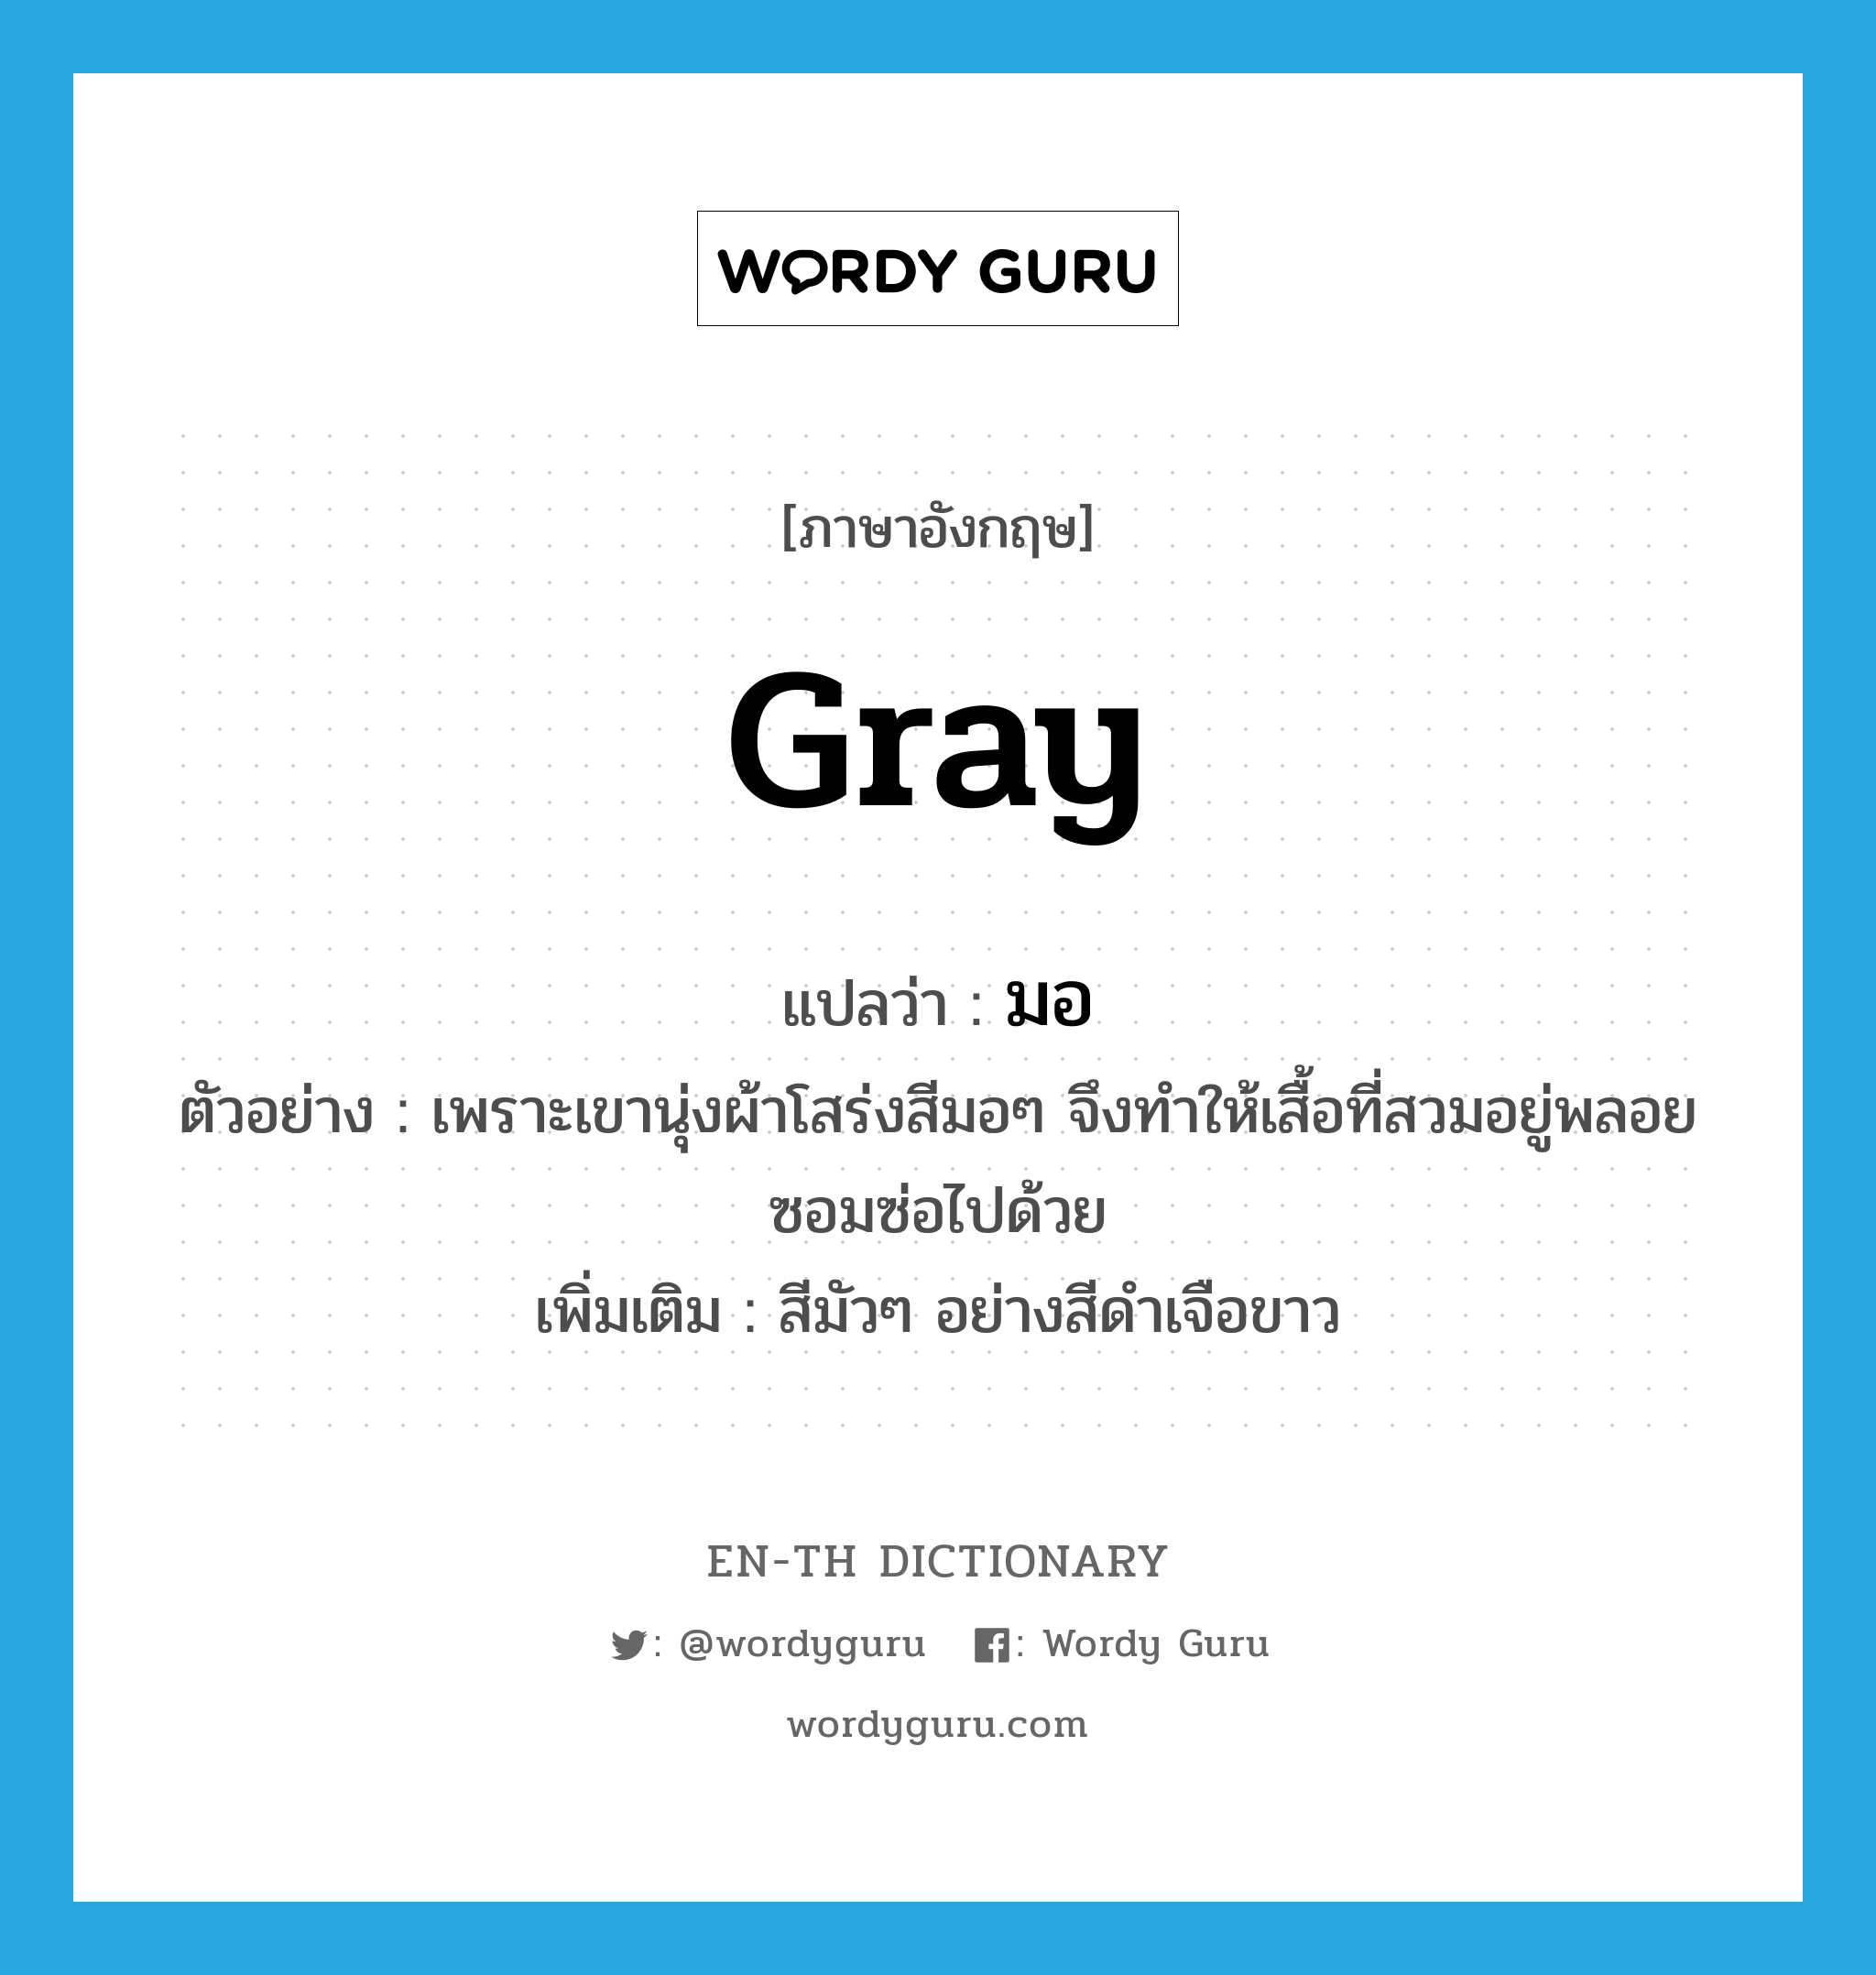 gray แปลว่า?, คำศัพท์ภาษาอังกฤษ gray แปลว่า มอ ประเภท ADJ ตัวอย่าง เพราะเขานุ่งผ้าโสร่งสีมอๆ จึงทำให้เสื้อที่สวมอยู่พลอยซอมซ่อไปด้วย เพิ่มเติม สีมัวๆ อย่างสีดำเจือขาว หมวด ADJ